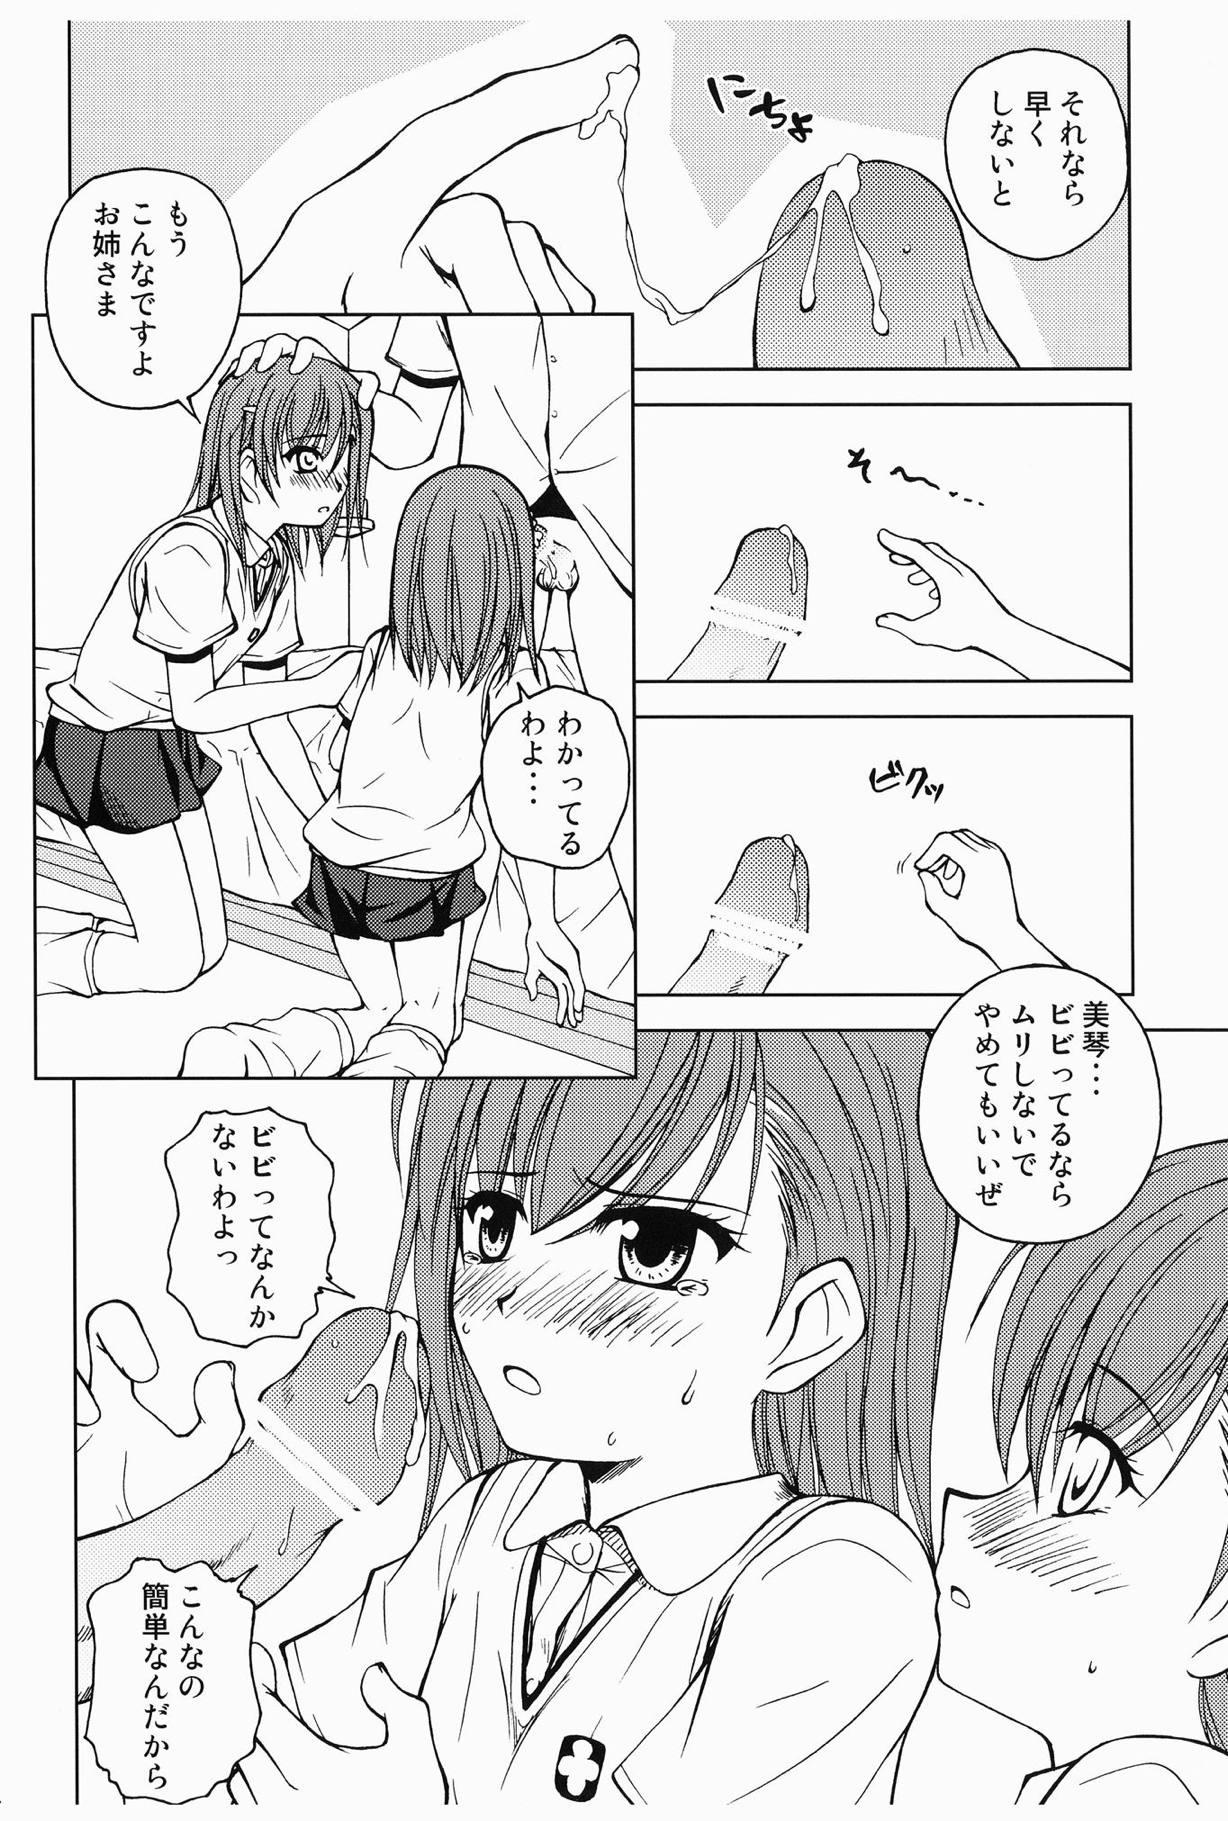 Real Orgasms Touma to Misaka to Railgun - Toaru kagaku no railgun Hot Women Having Sex - Page 5